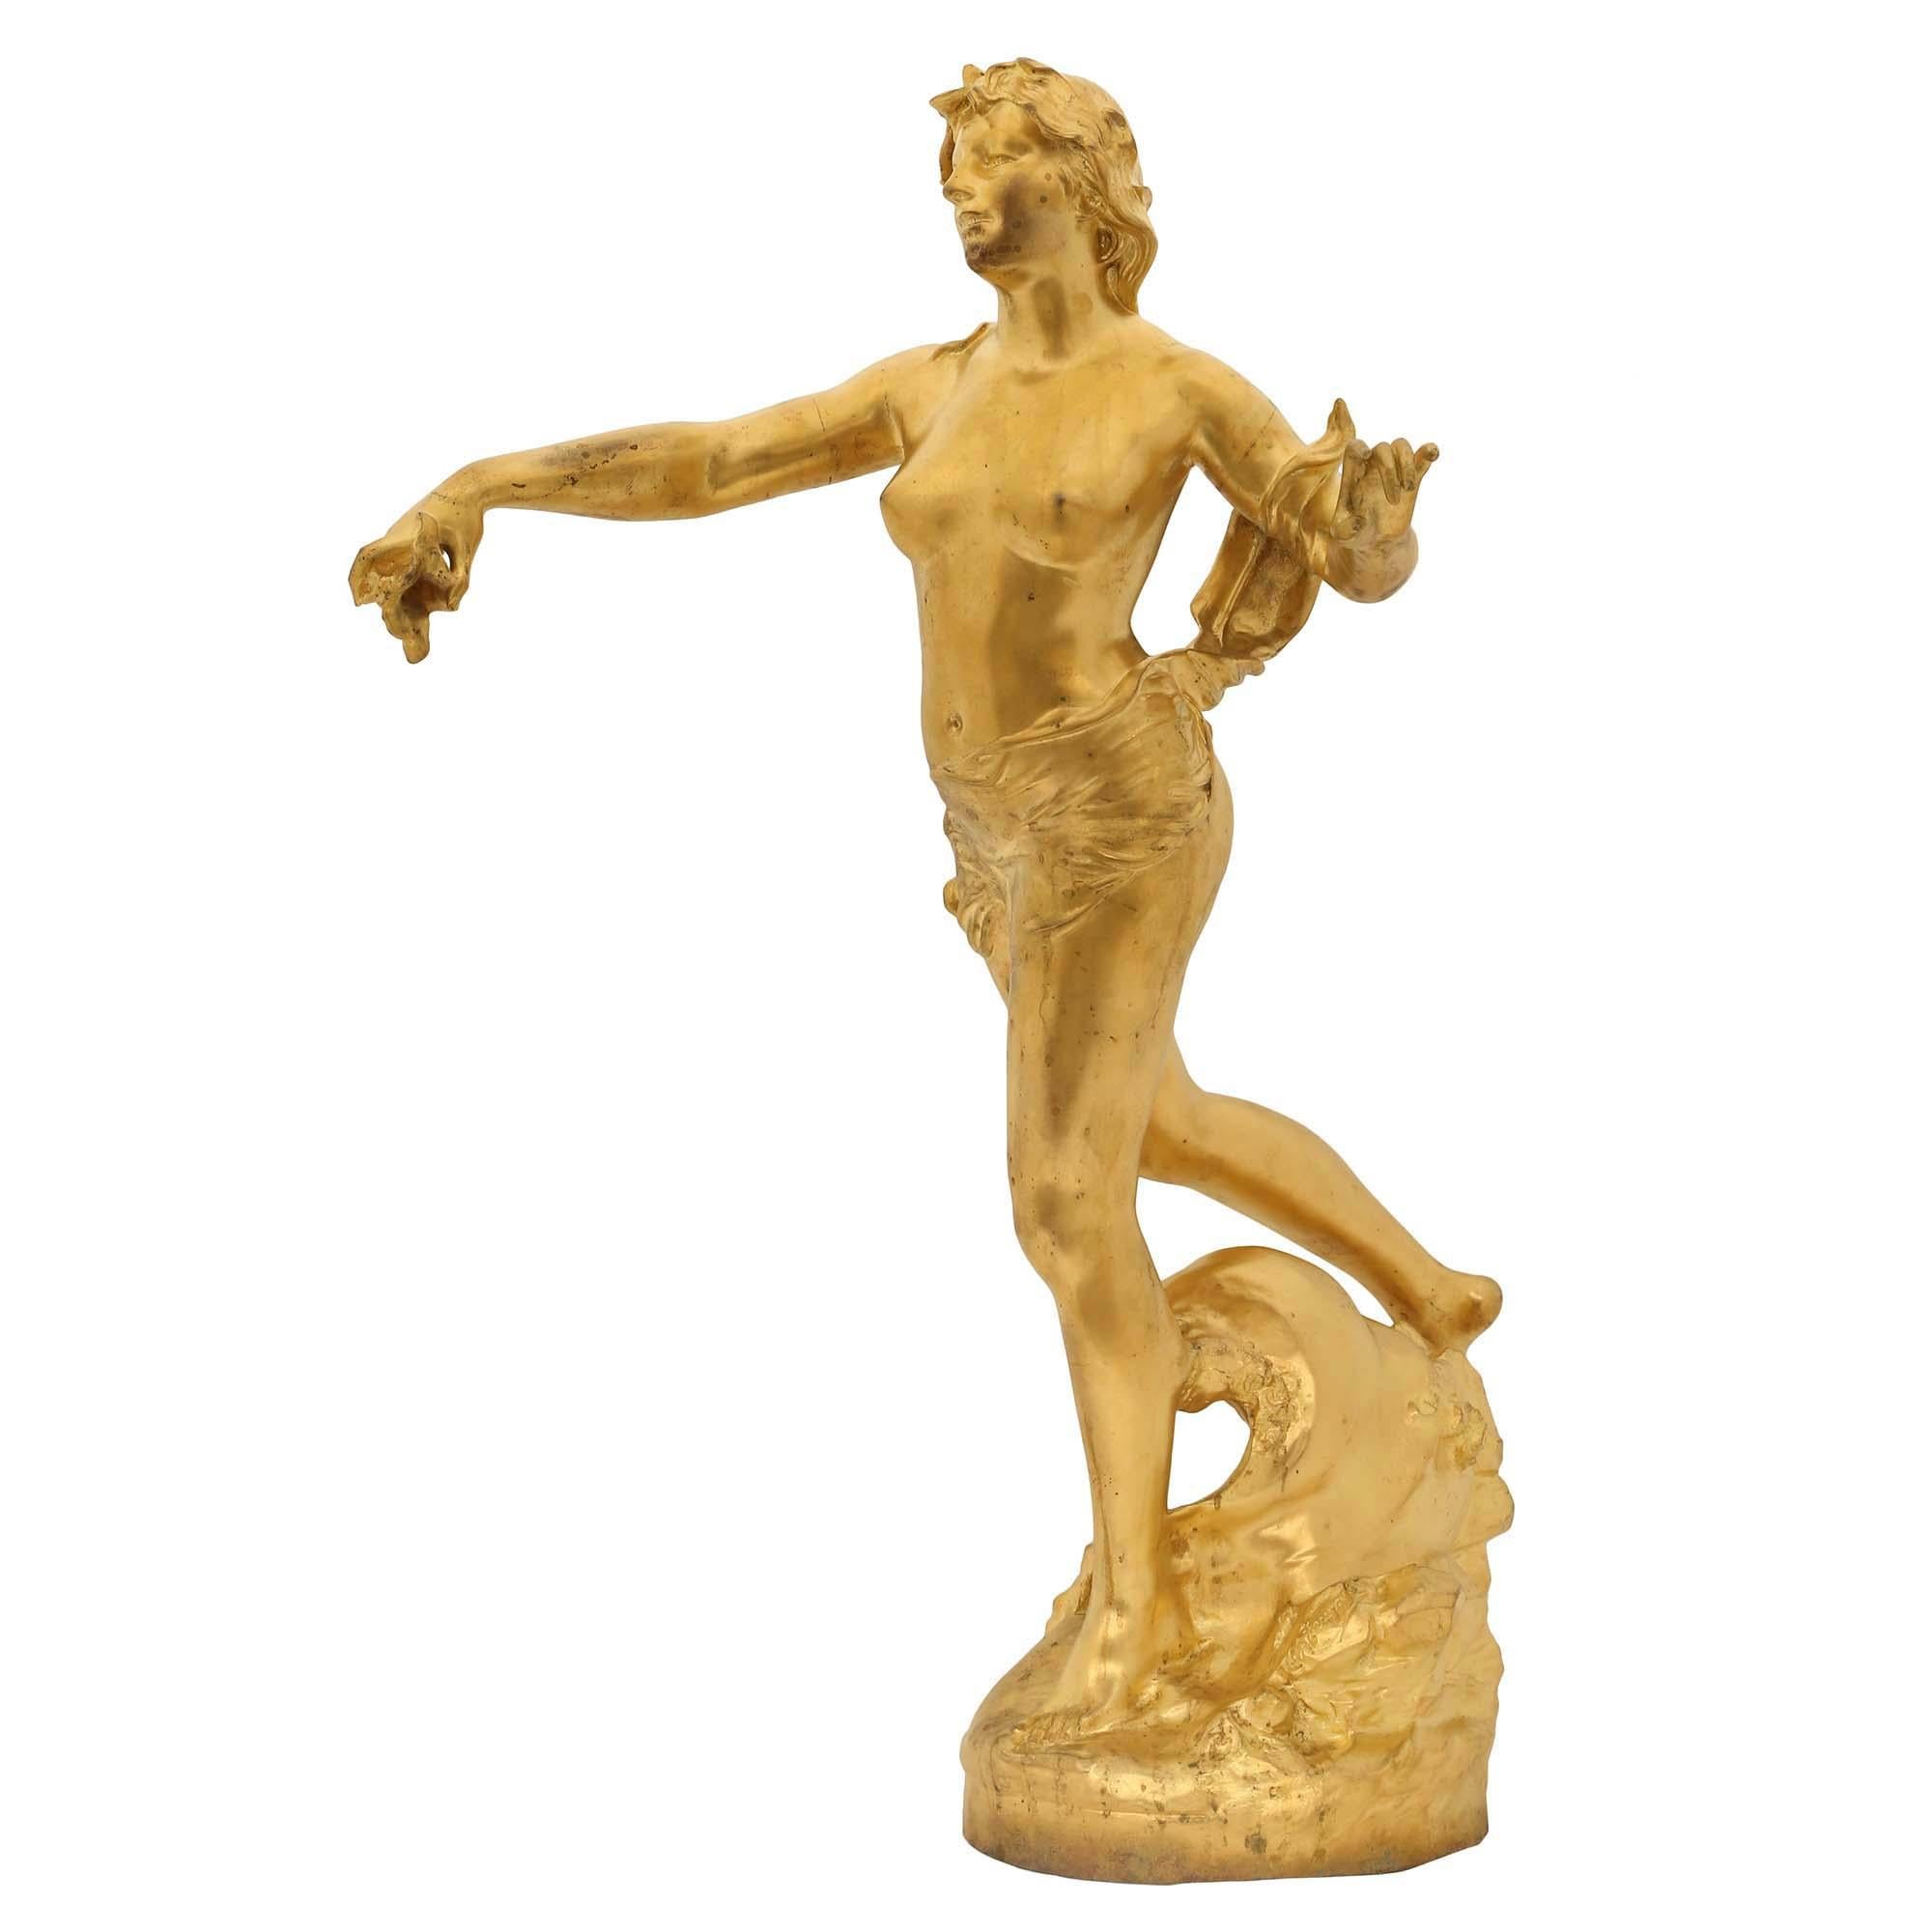 Eine äußerst elegante französische Ormolu-Statue der Nereiden aus dem 19. Jahrhundert, signiert von Claude-André Férigoule. Die Skulptur steht auf einem runden Sockel mit einem Wasser- und Wellenmotiv. Die Nymphe scheint mit ausgestreckten Armen auf